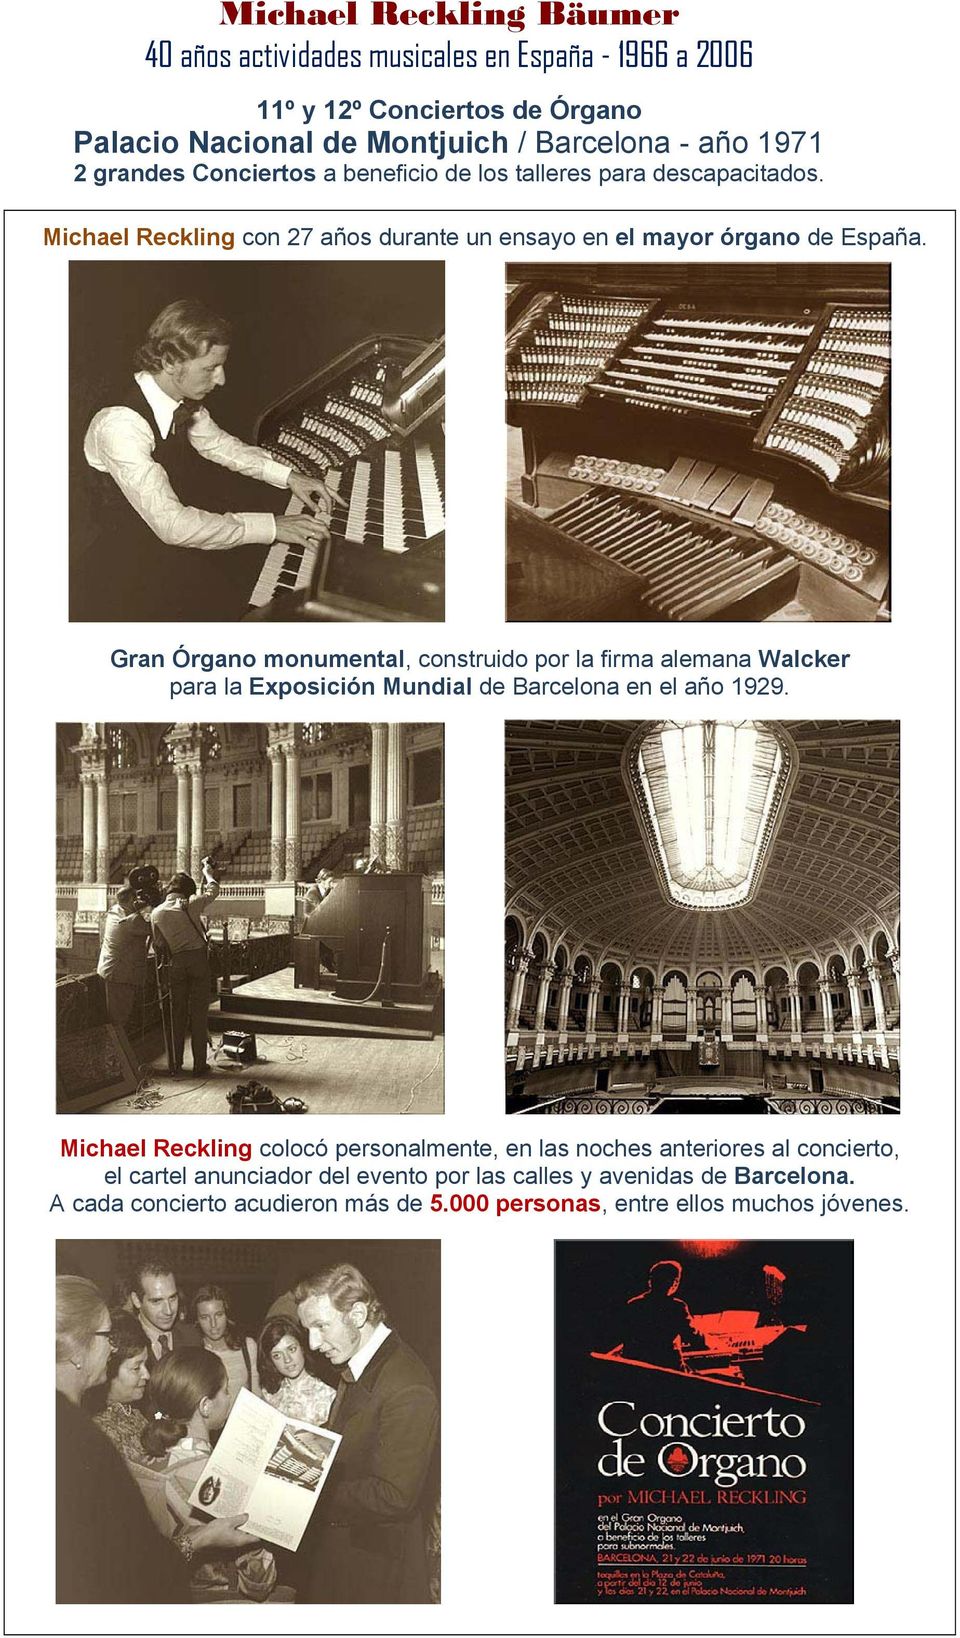 Gran Órgano monumental, construido por la firma alemana Walcker para la Exposición Mundial de Barcelona en el año 1929.